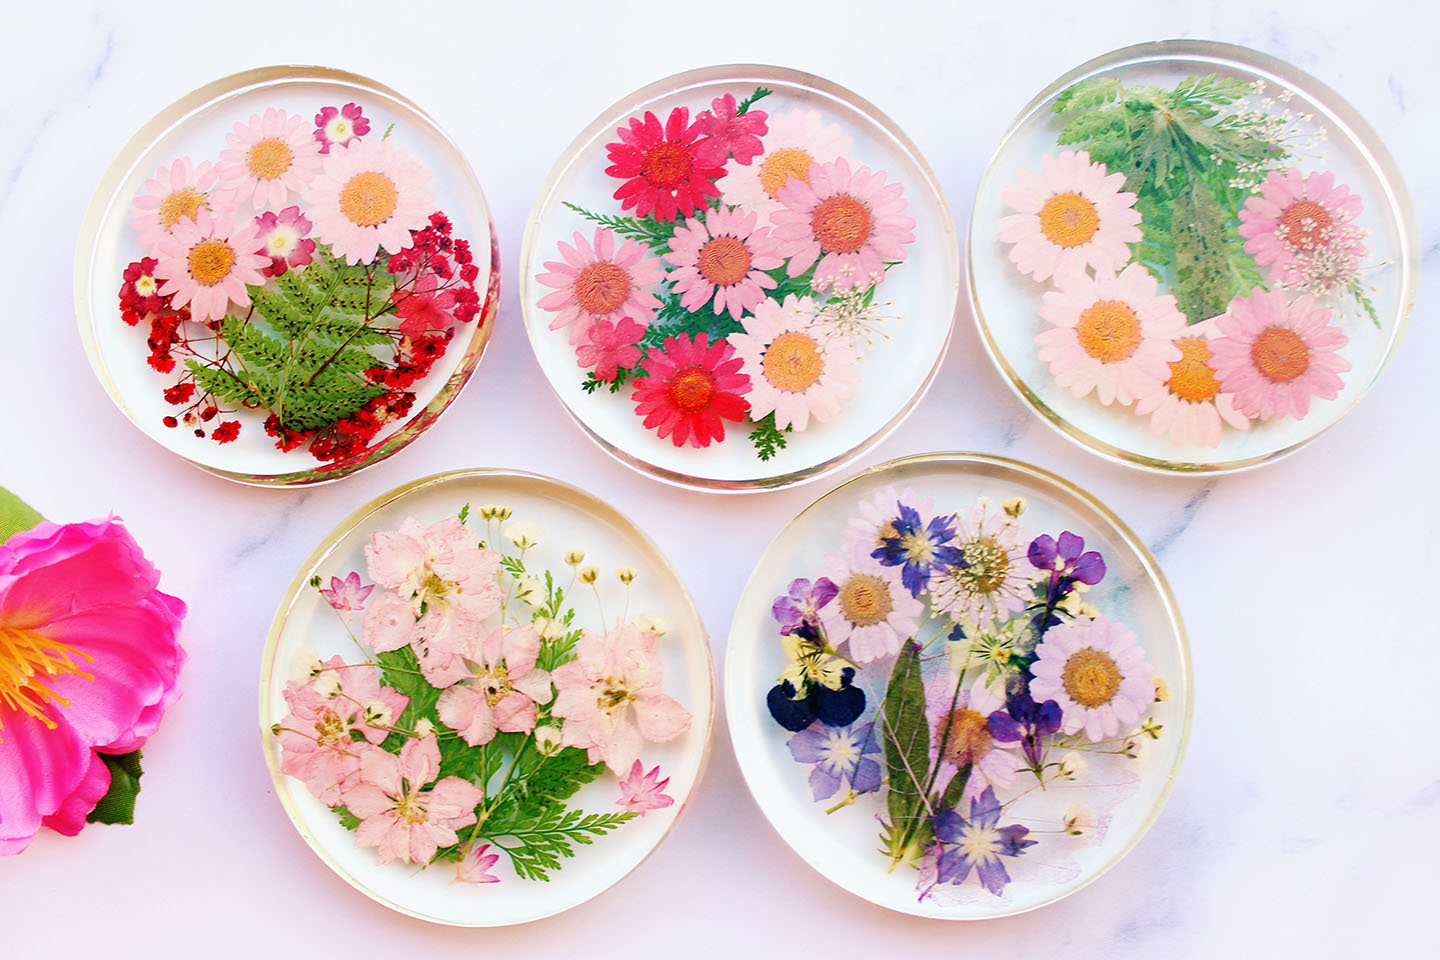 DIY Pressed Flower Coasters